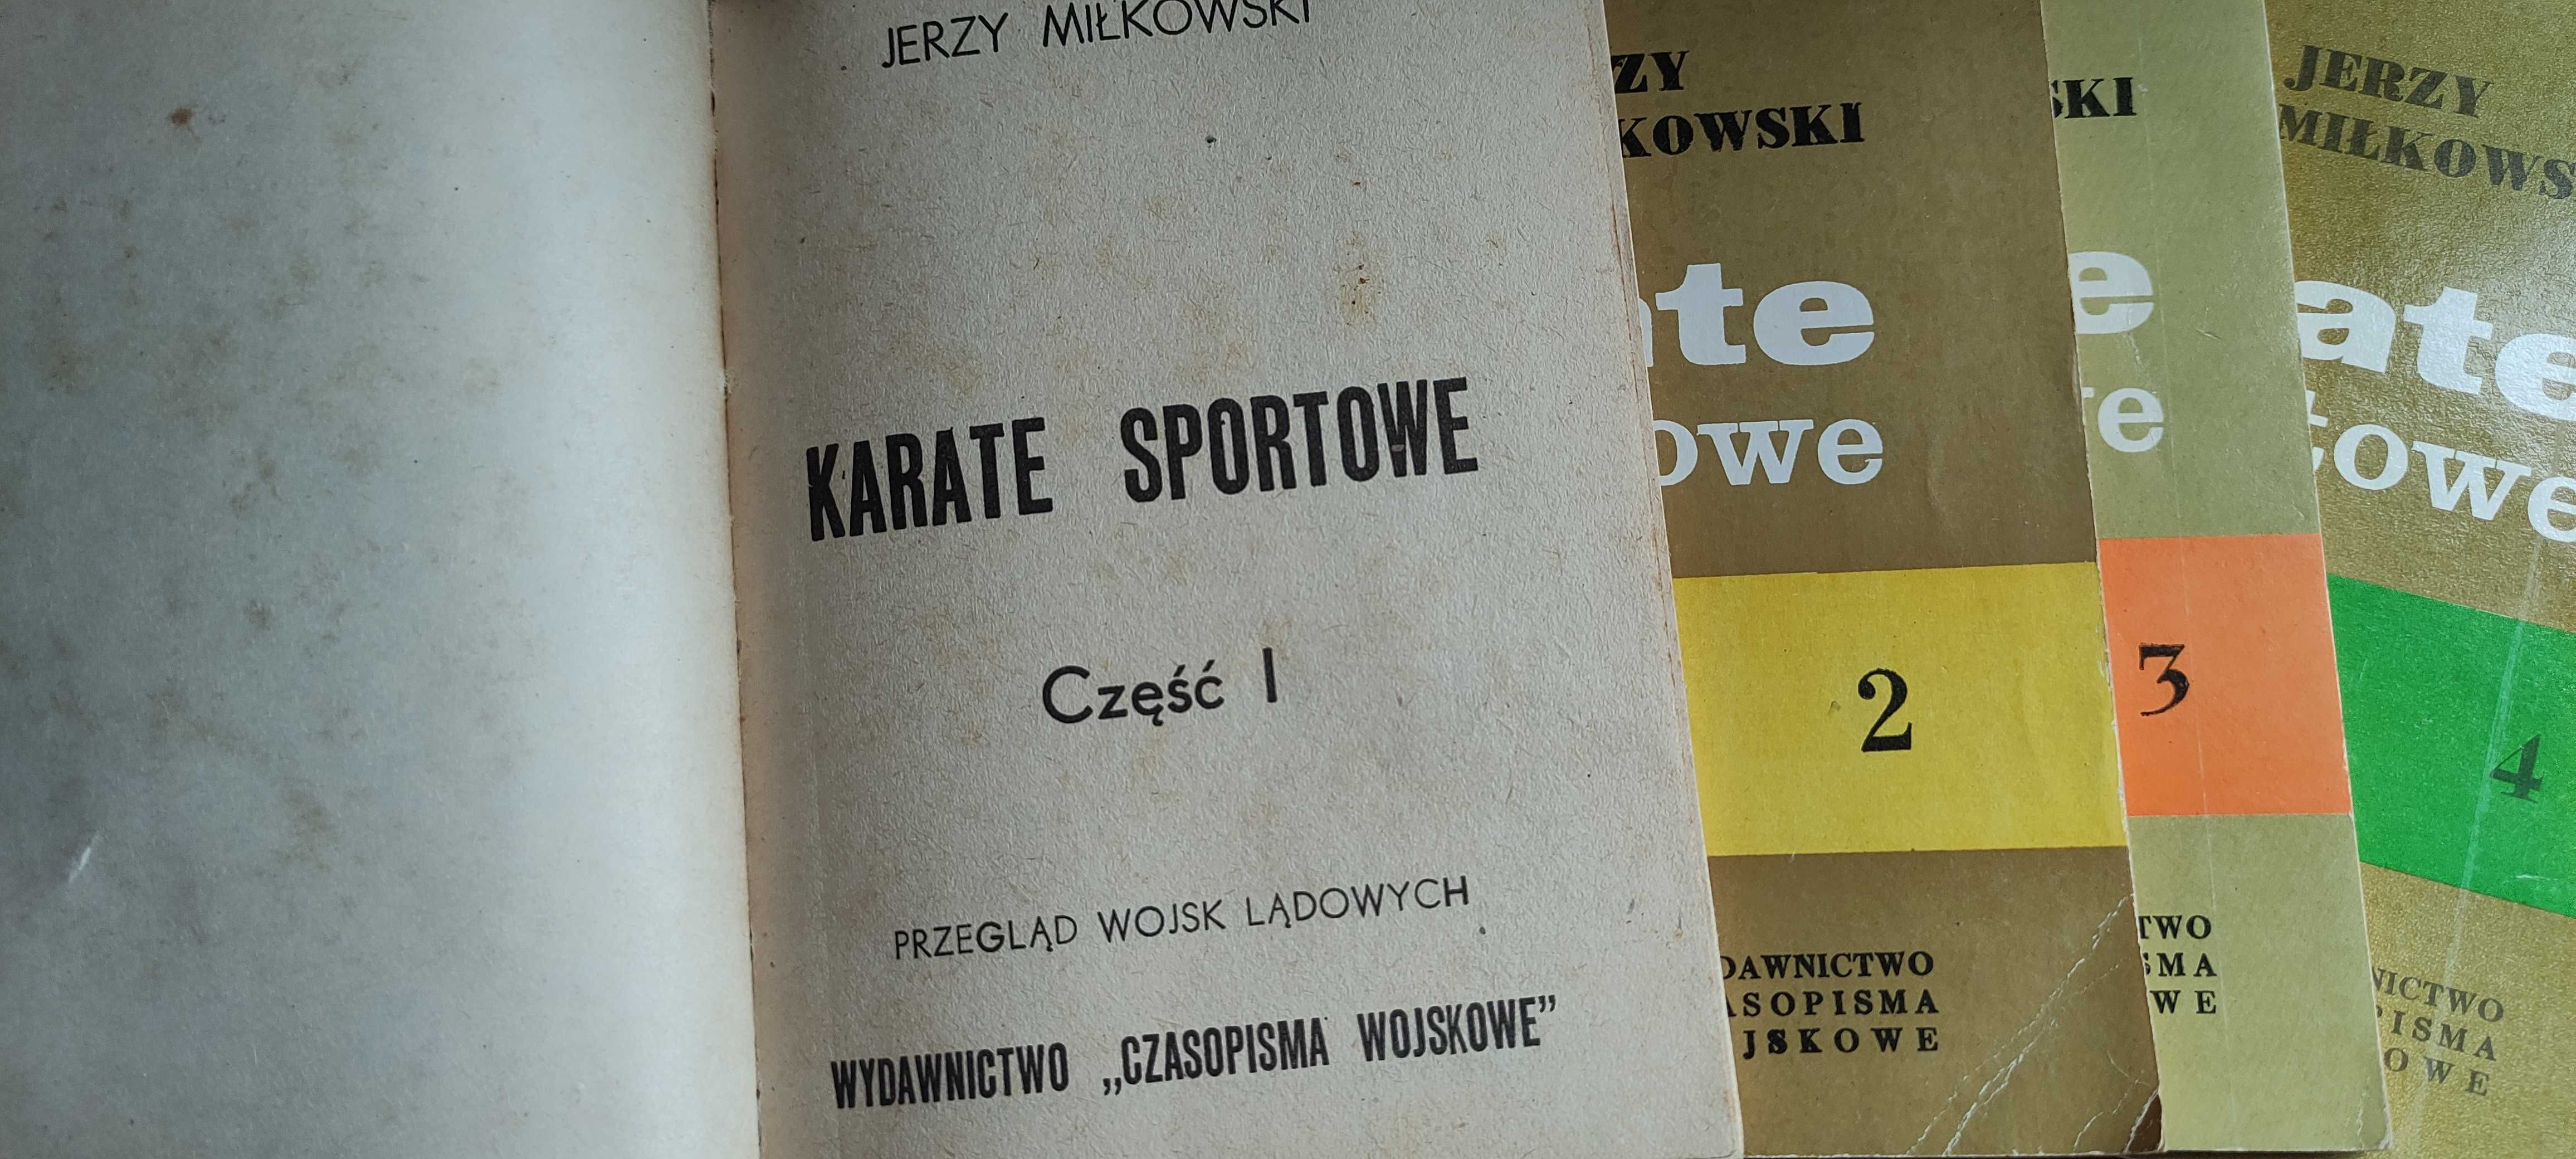 Książki Karate sportowe Jerzy Miłkowski